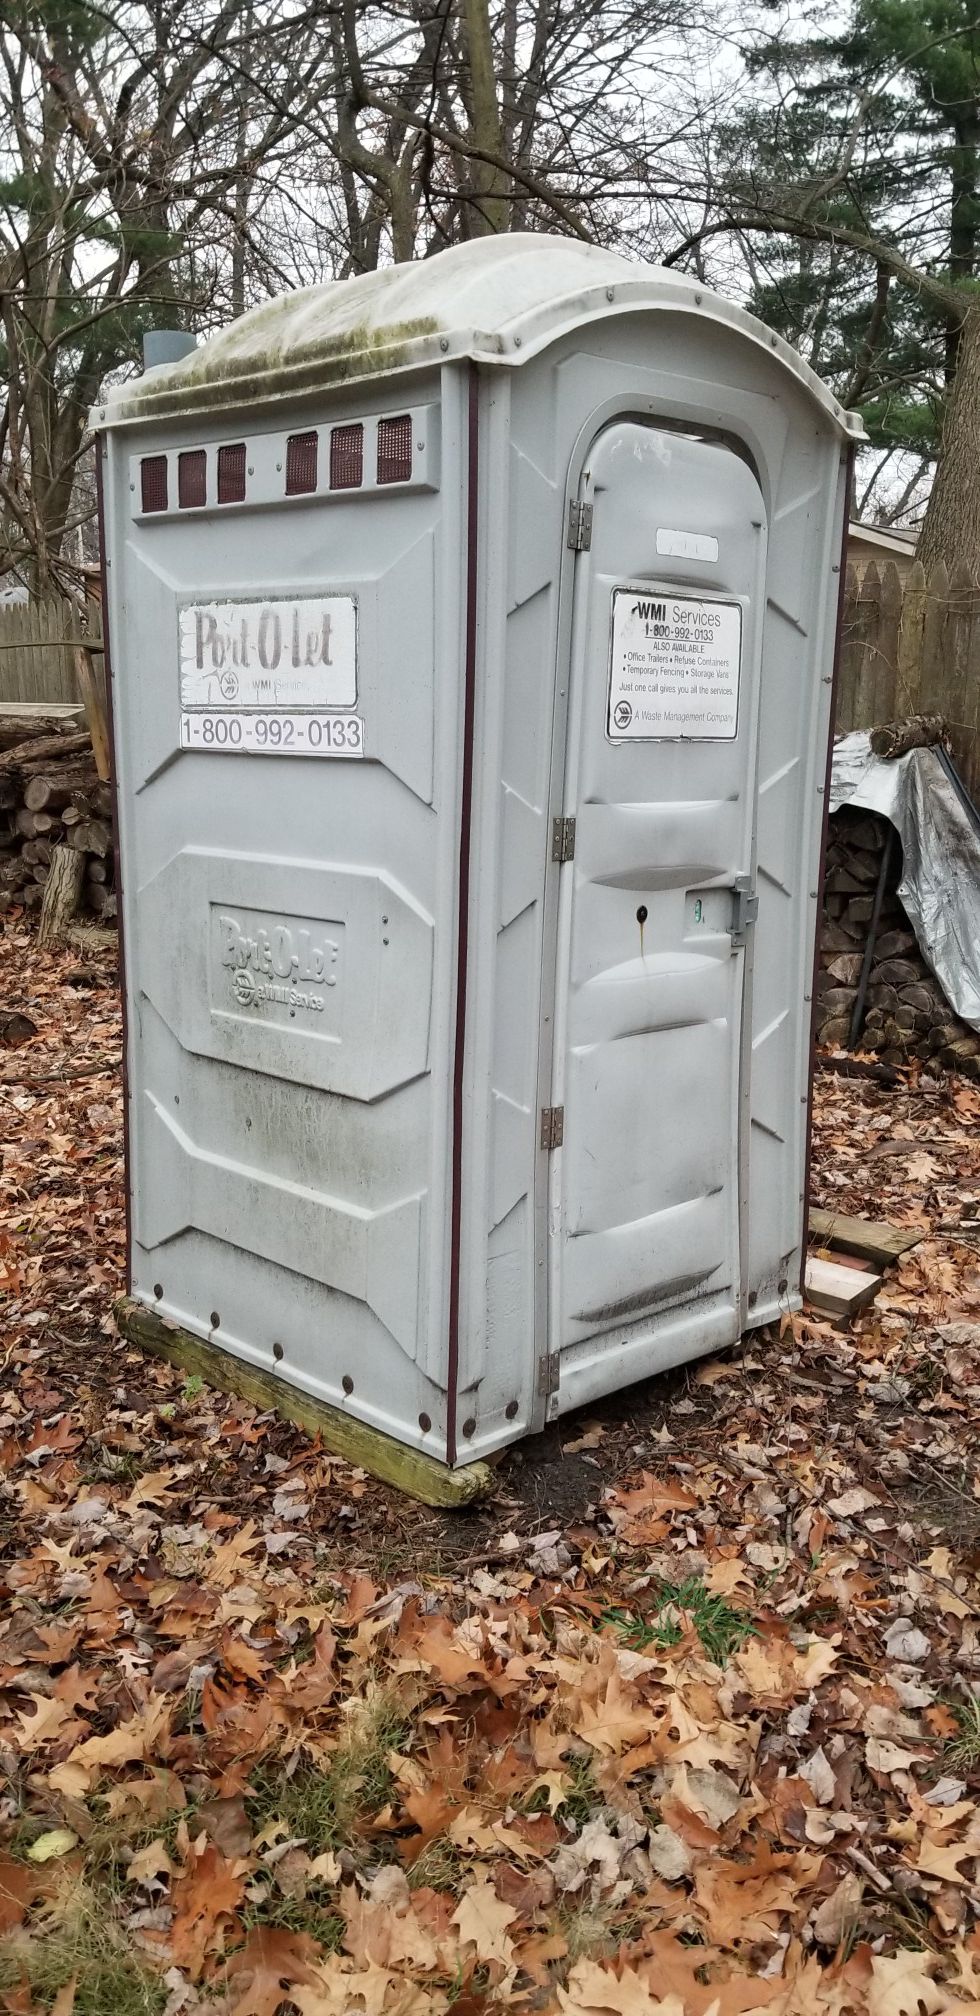 Porta potty for sale $350 OBO